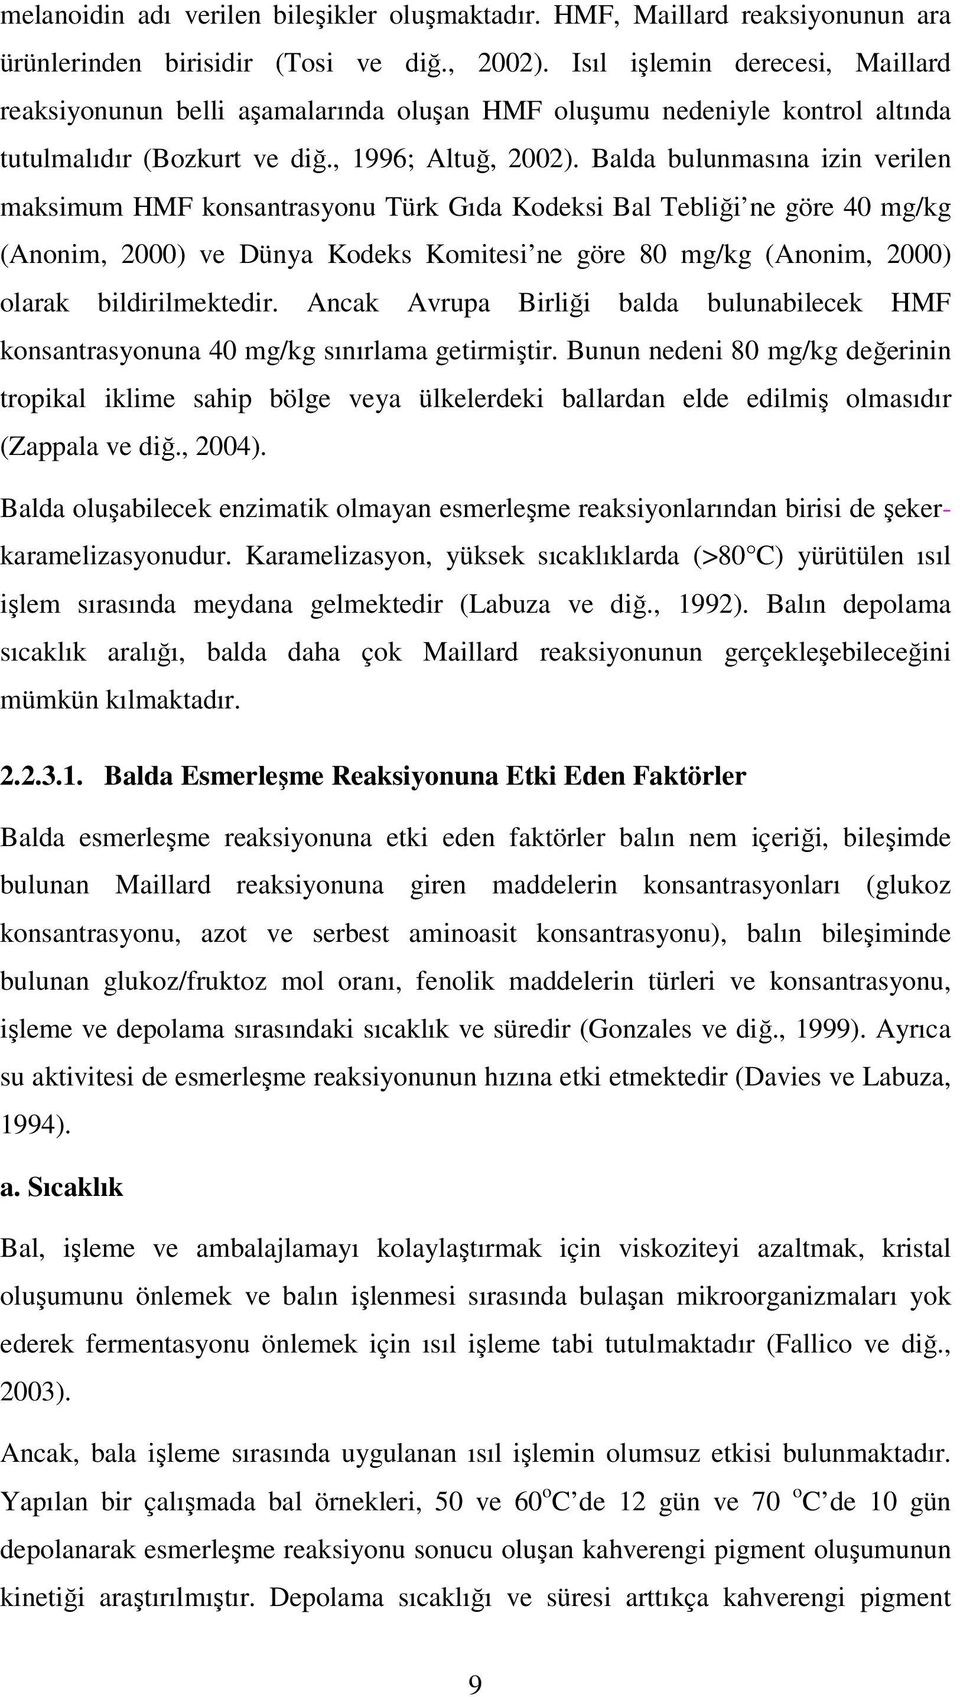 Balda bulunmasına izin verilen maksimum HMF konsantrasyonu Türk Gıda Kodeksi Bal Tebliği ne göre 40 mg/kg (nonim, 2000) ve Dünya Kodeks Komitesi ne göre 80 mg/kg (nonim, 2000) olarak bildirilmektedir.